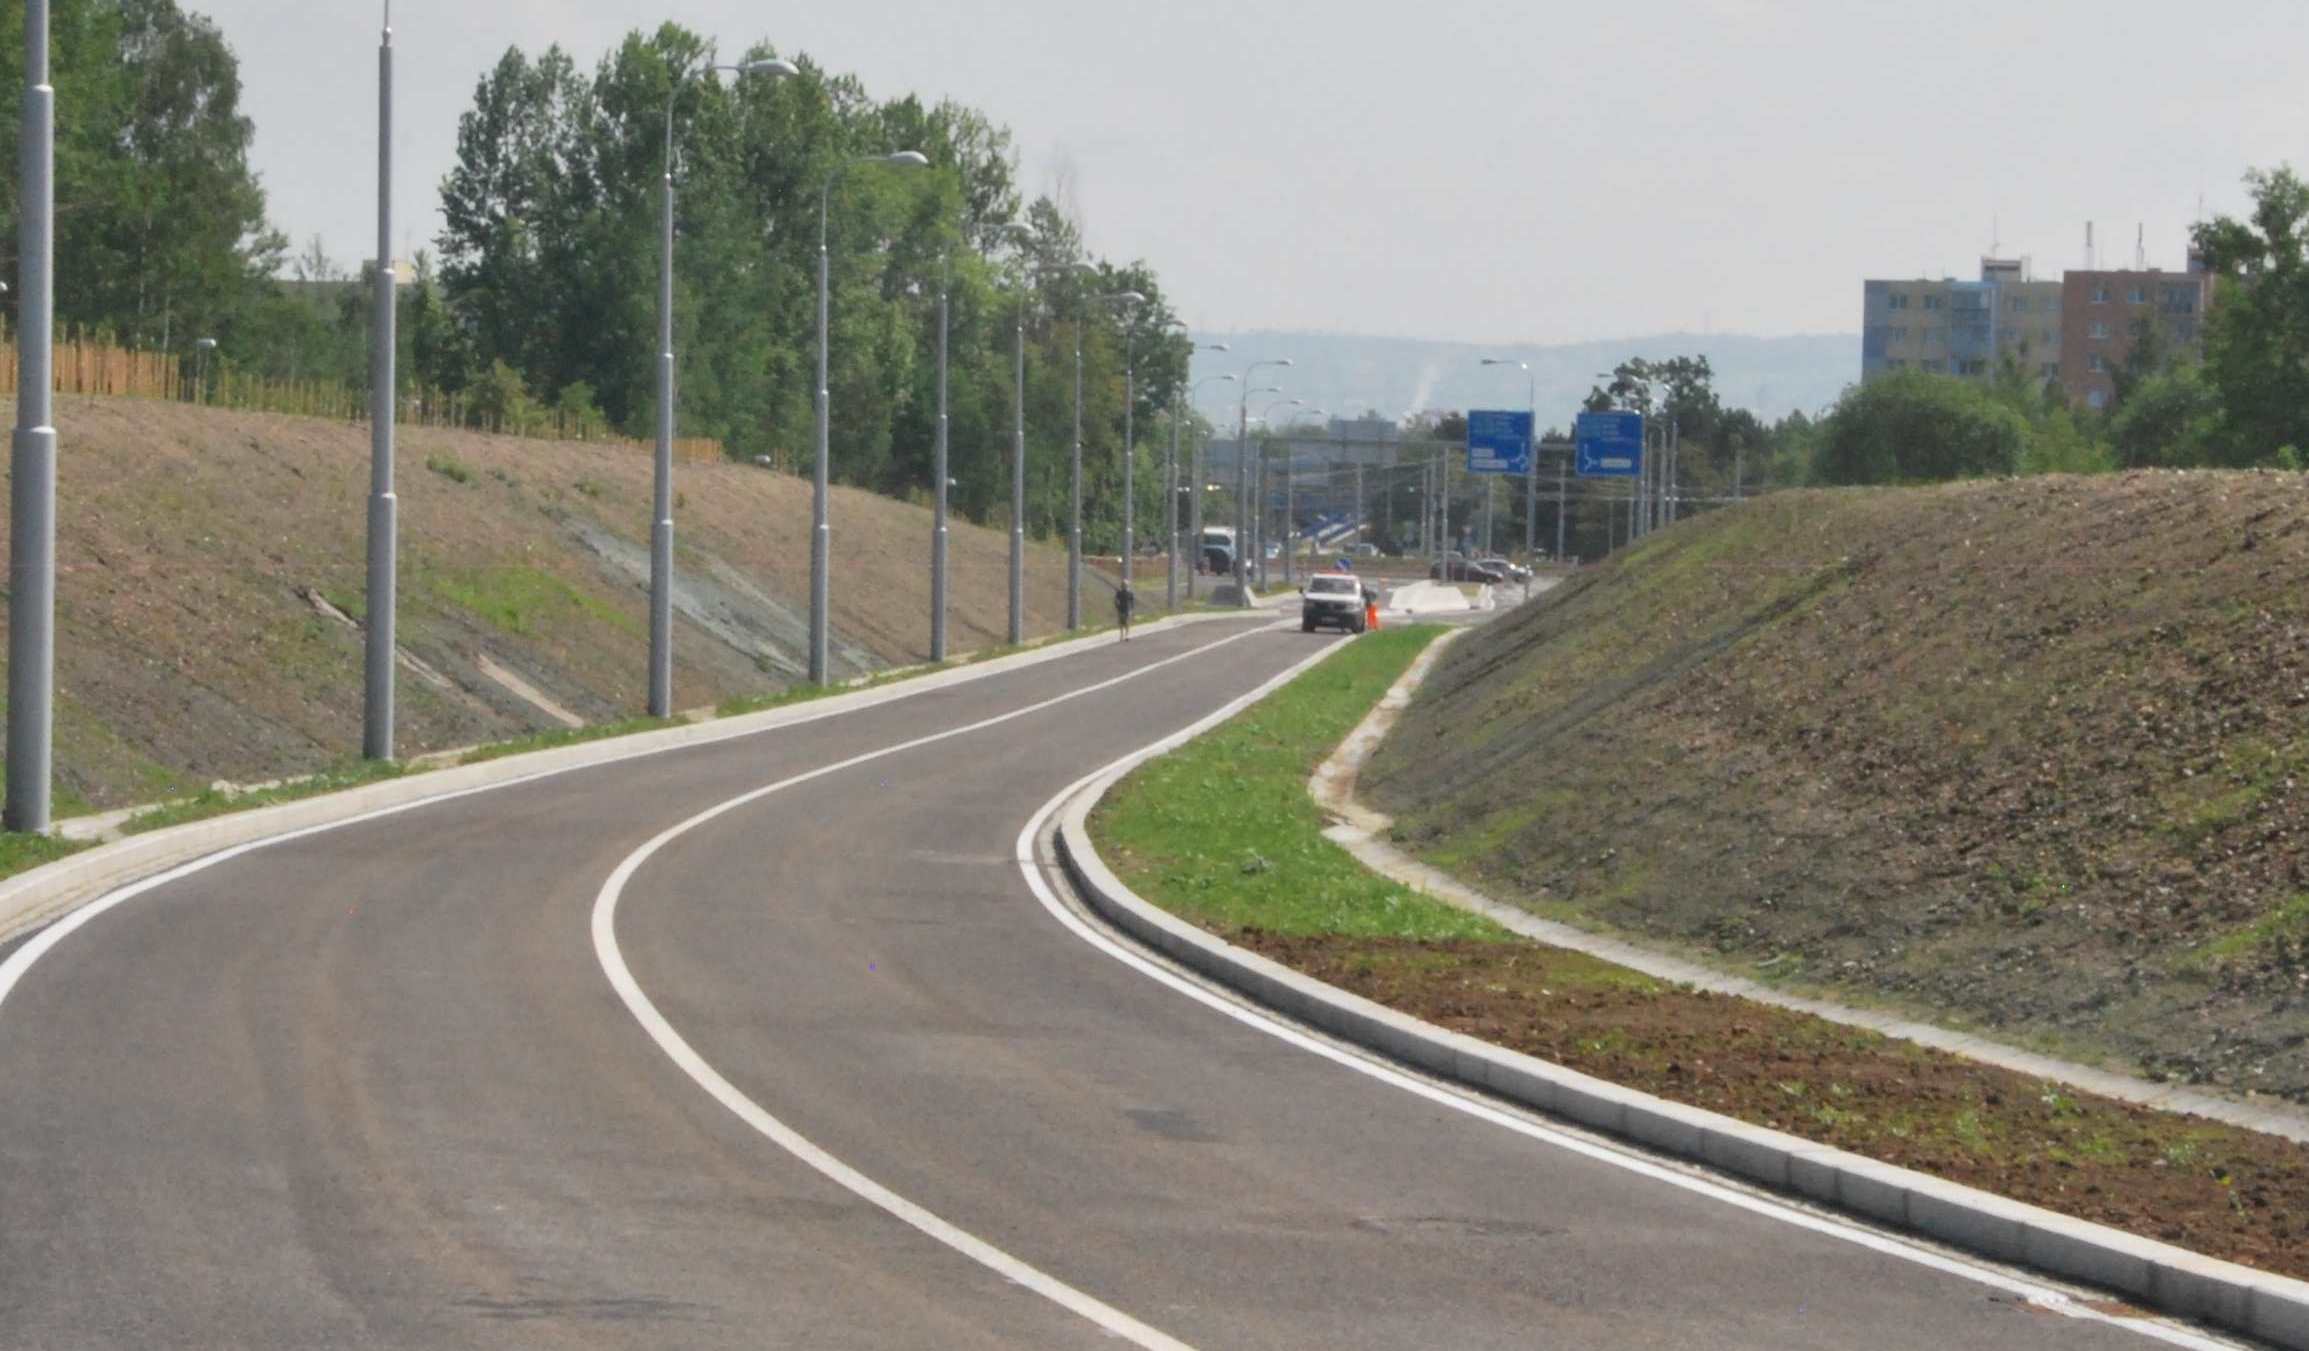 Nová silnice spojuje ulice Milady Horákové a Strakonická v Českých Budějovicích, čímž zkrátí cestu mezi dvěma největšími sídlišti ve městě